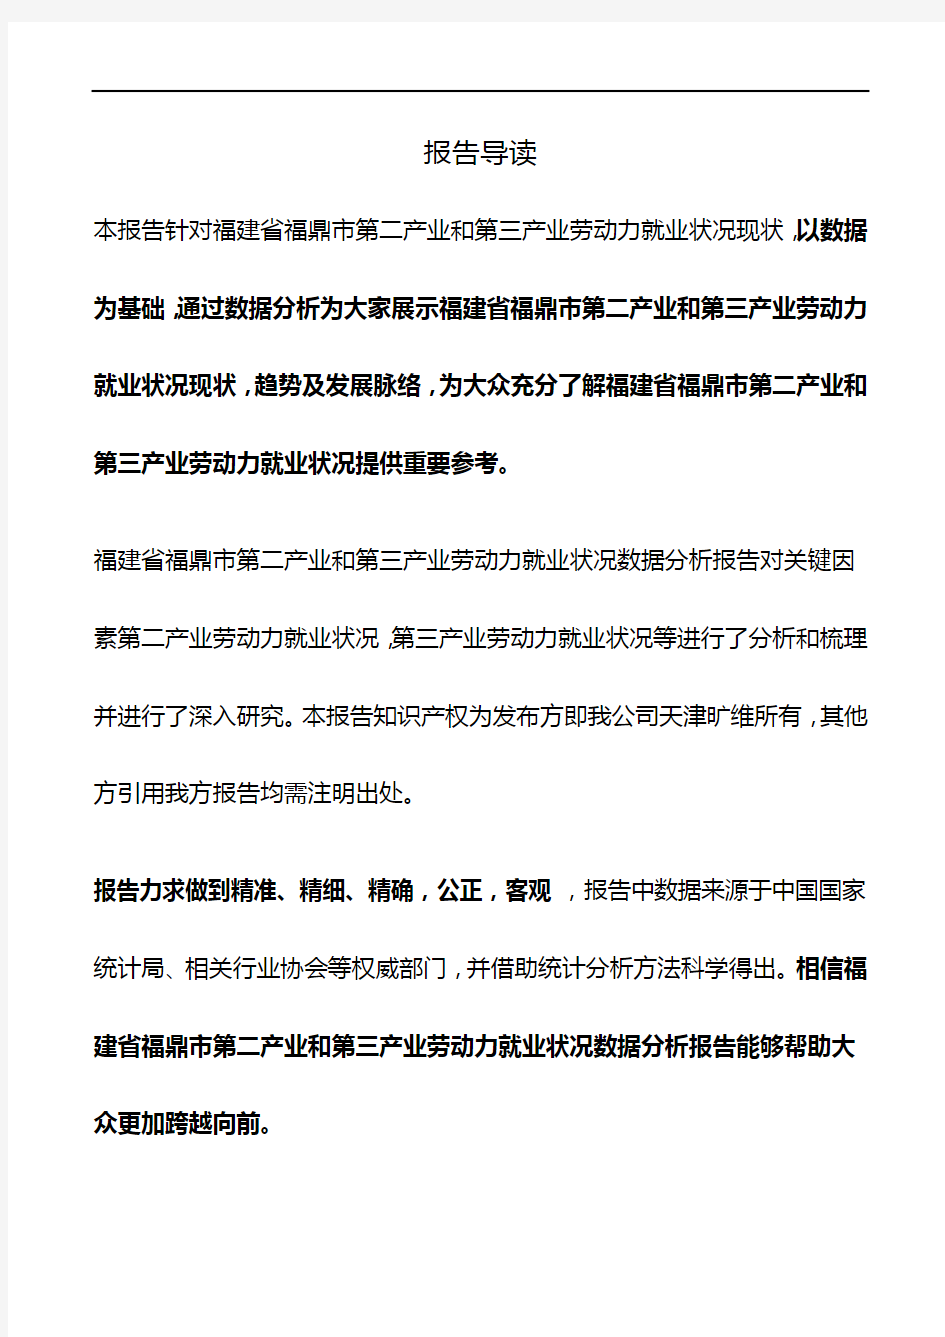 福建省福鼎市第二产业和第三产业劳动力就业状况3年数据分析报告2019版